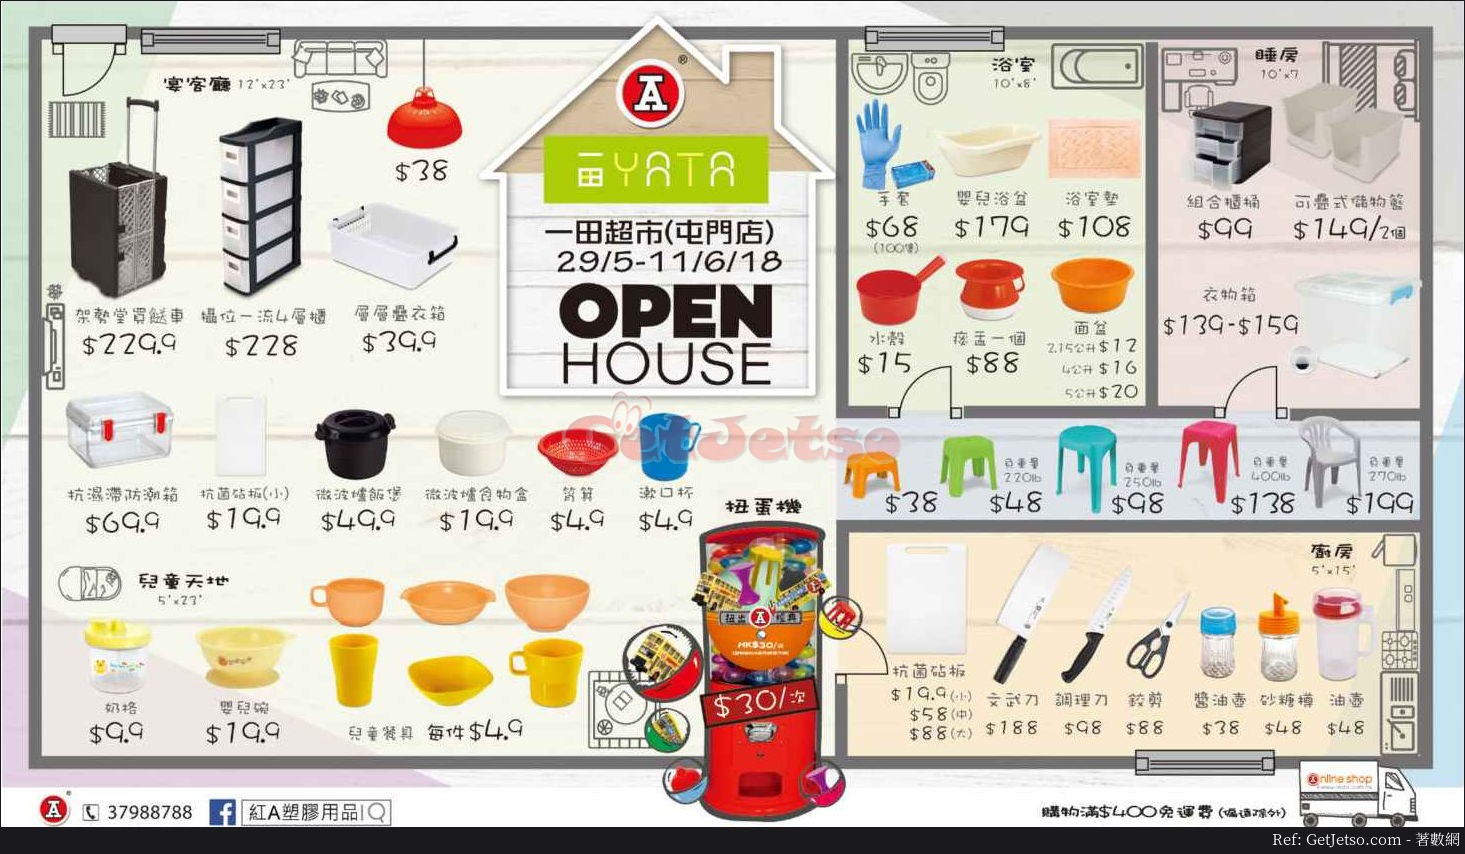 紅A 塑膠用品Open House購物優惠@一田百貨屯門店(至18年6月11日)圖片1